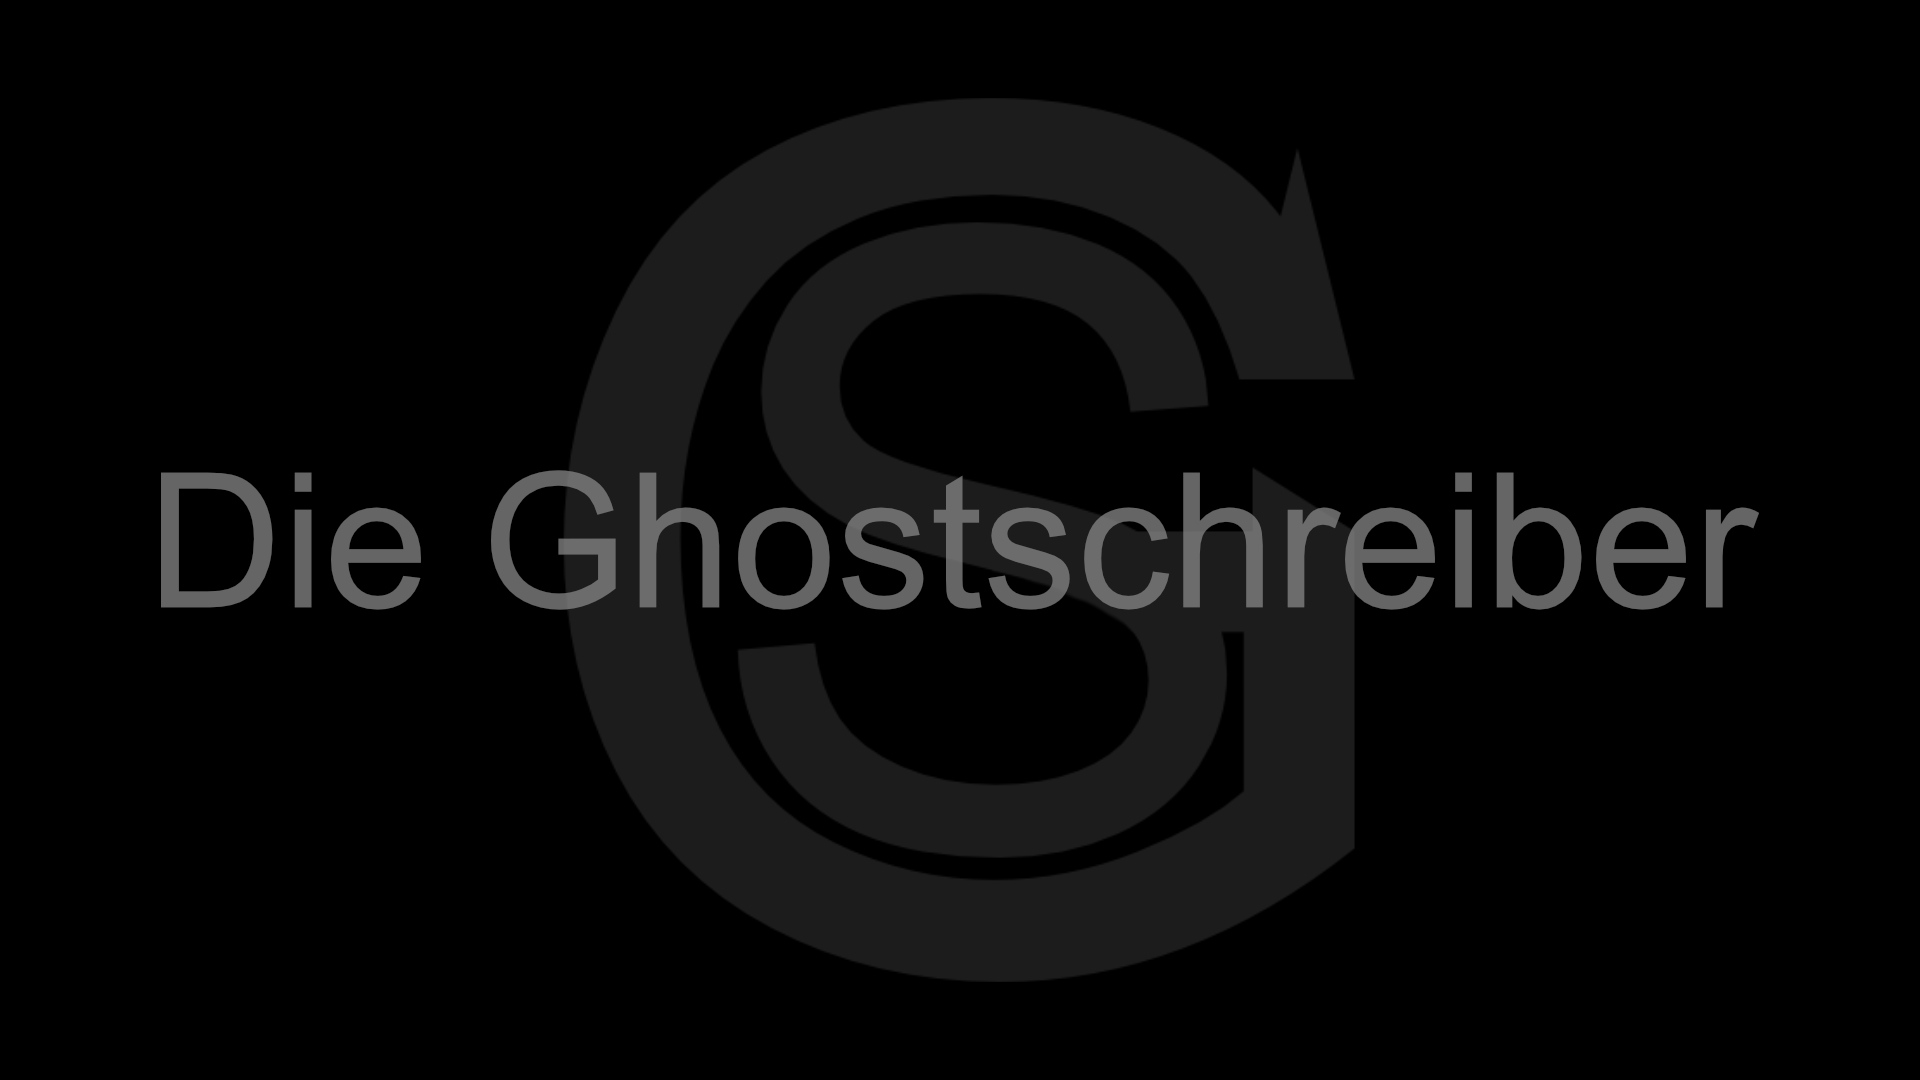 Ghostwriter Ghostschreiber Background